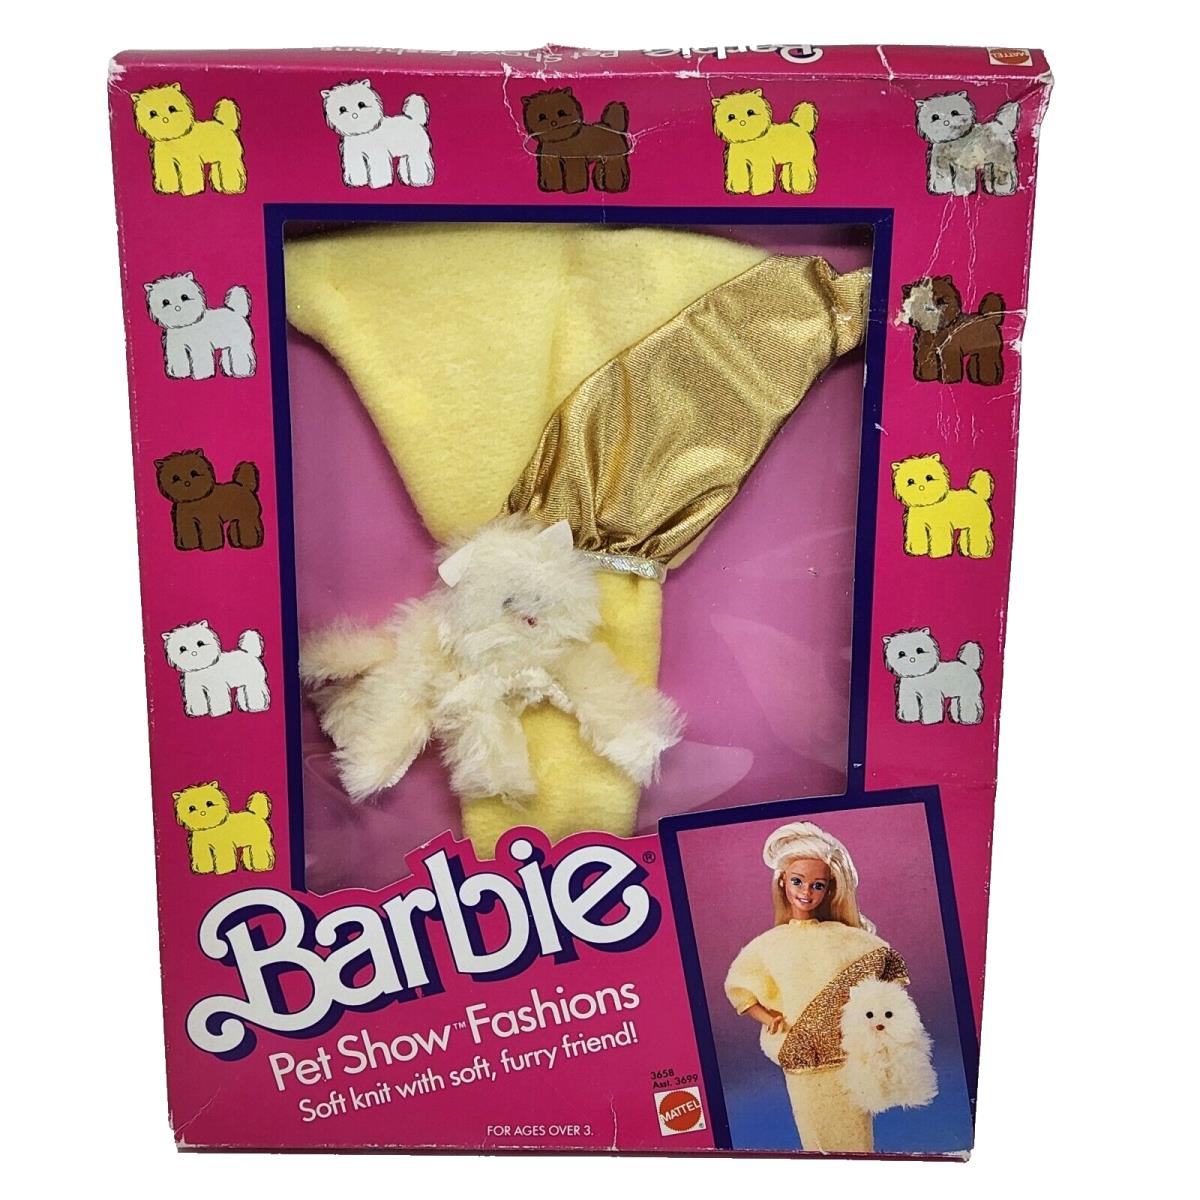 Vintage 1986 Barbie Pet Show Fashions Mattel Box 3658